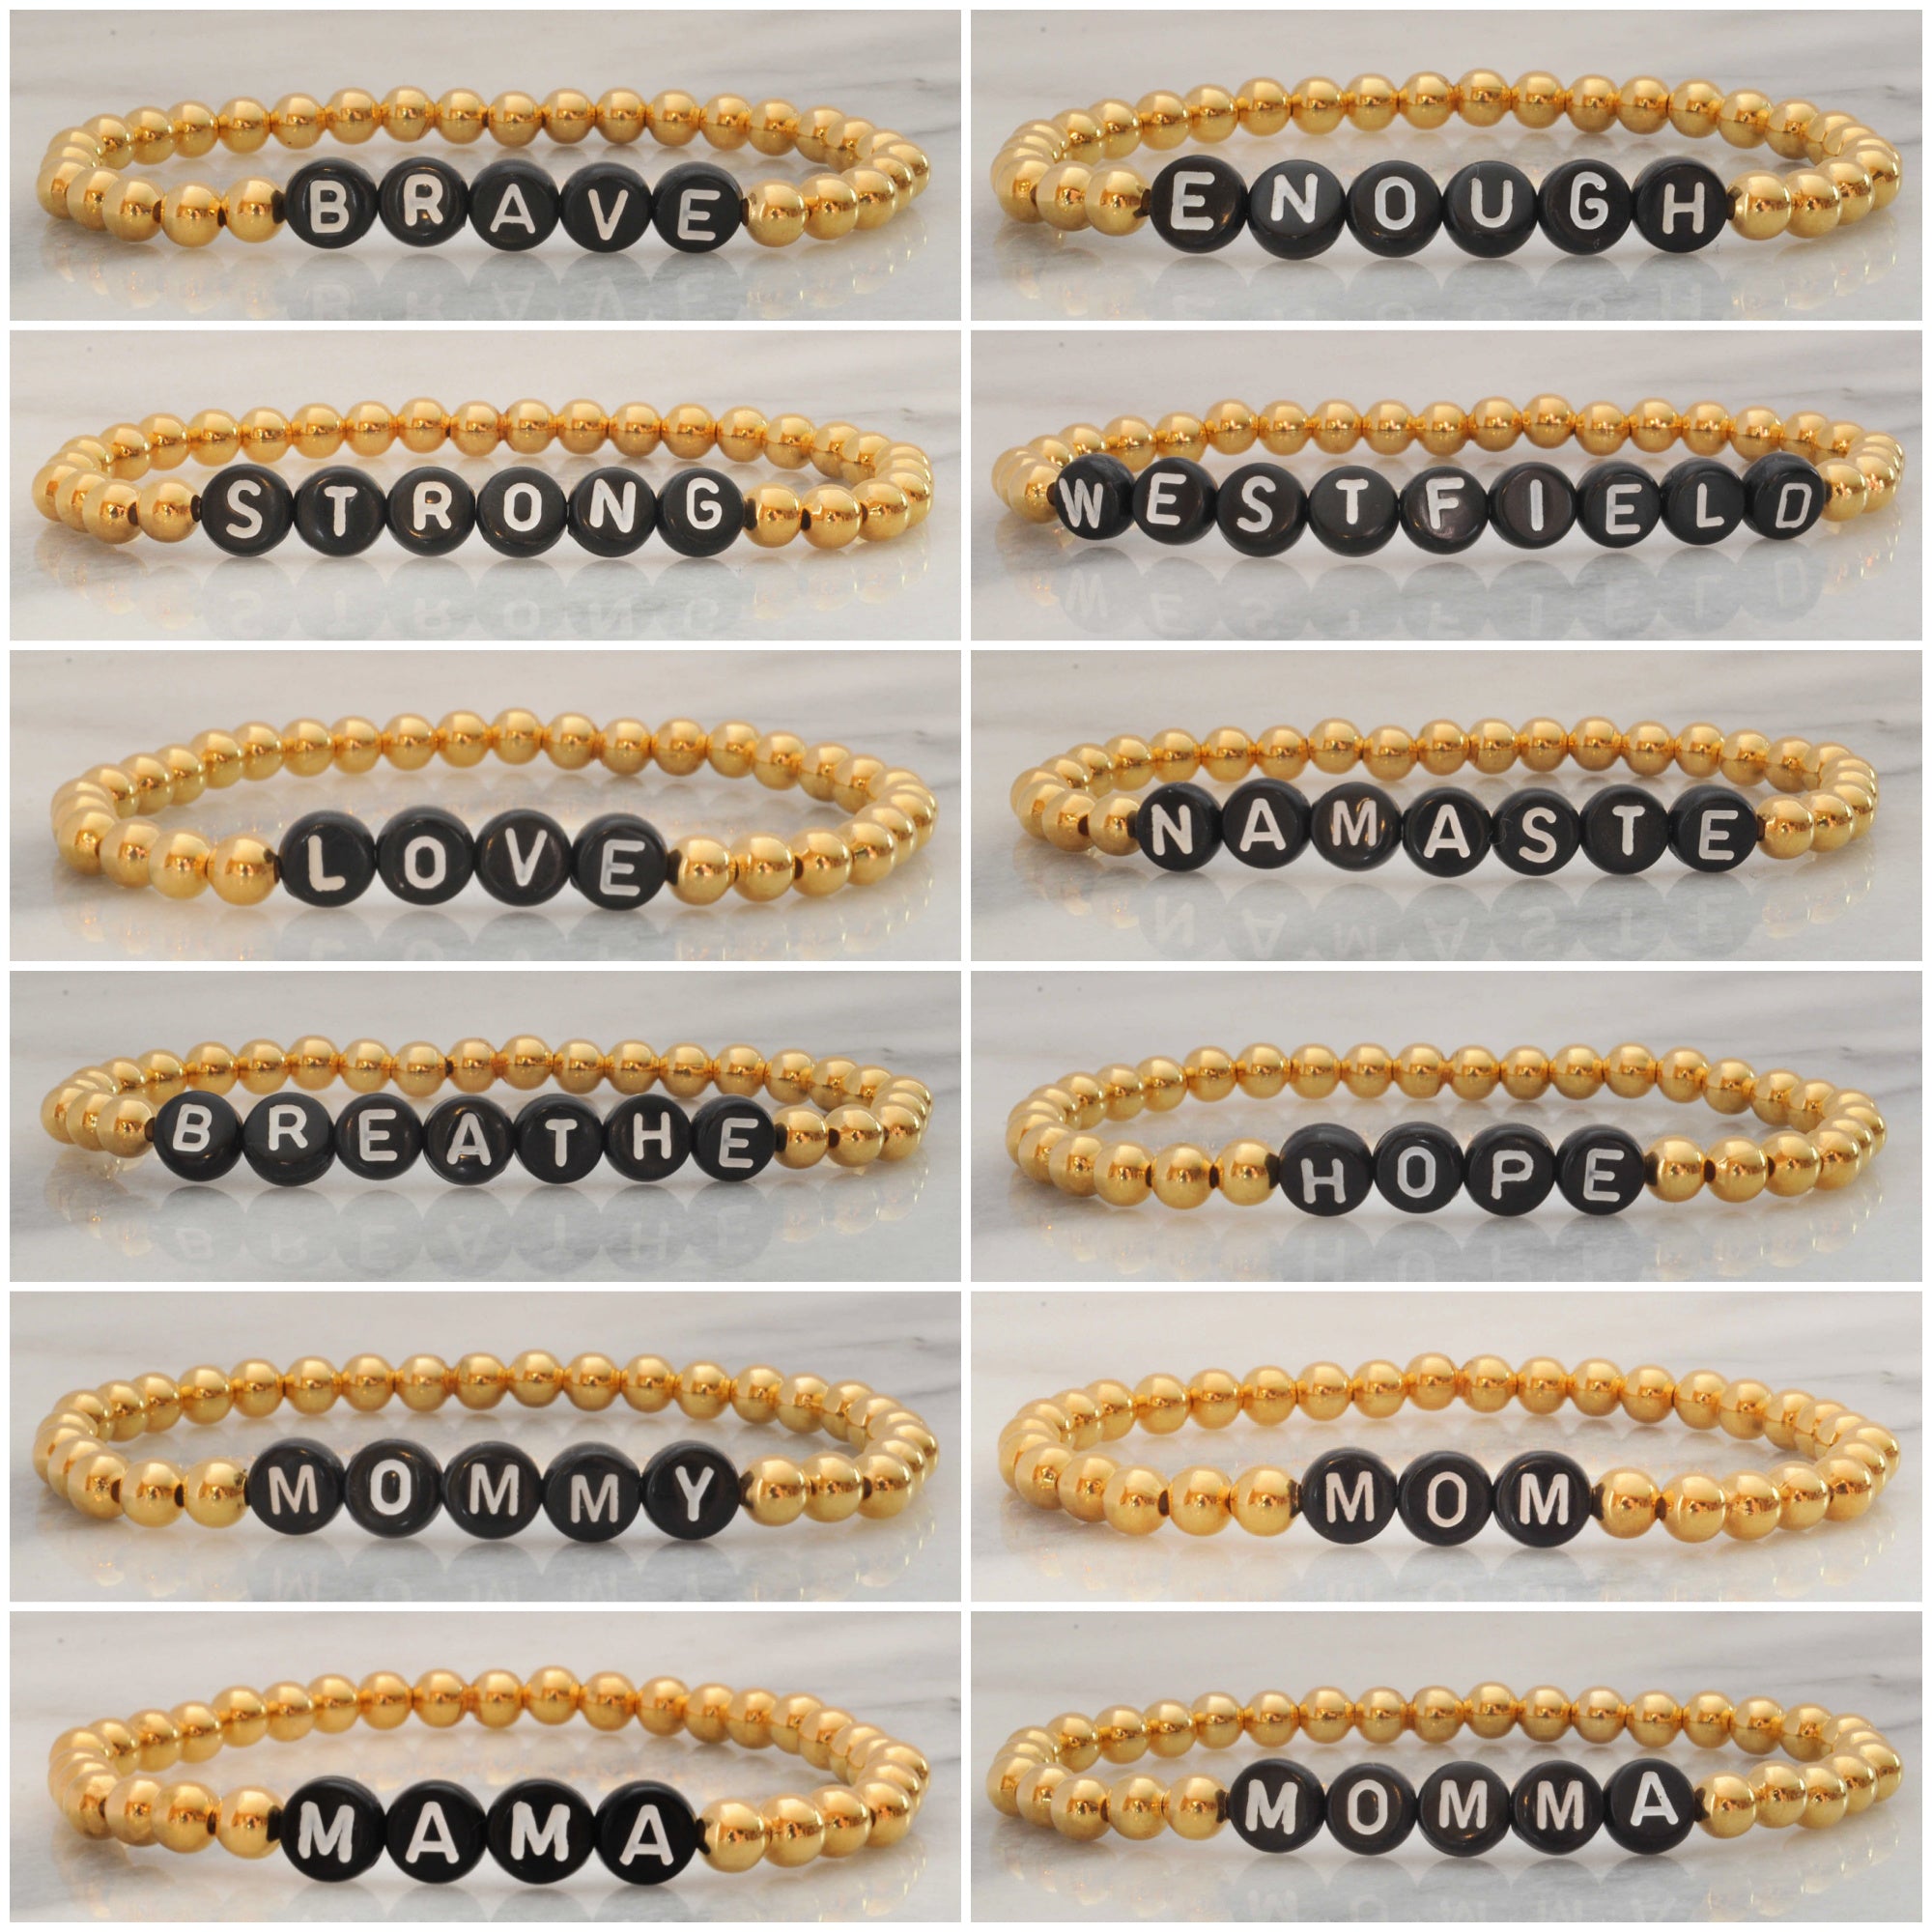 Custom Gold Bead Bracelet